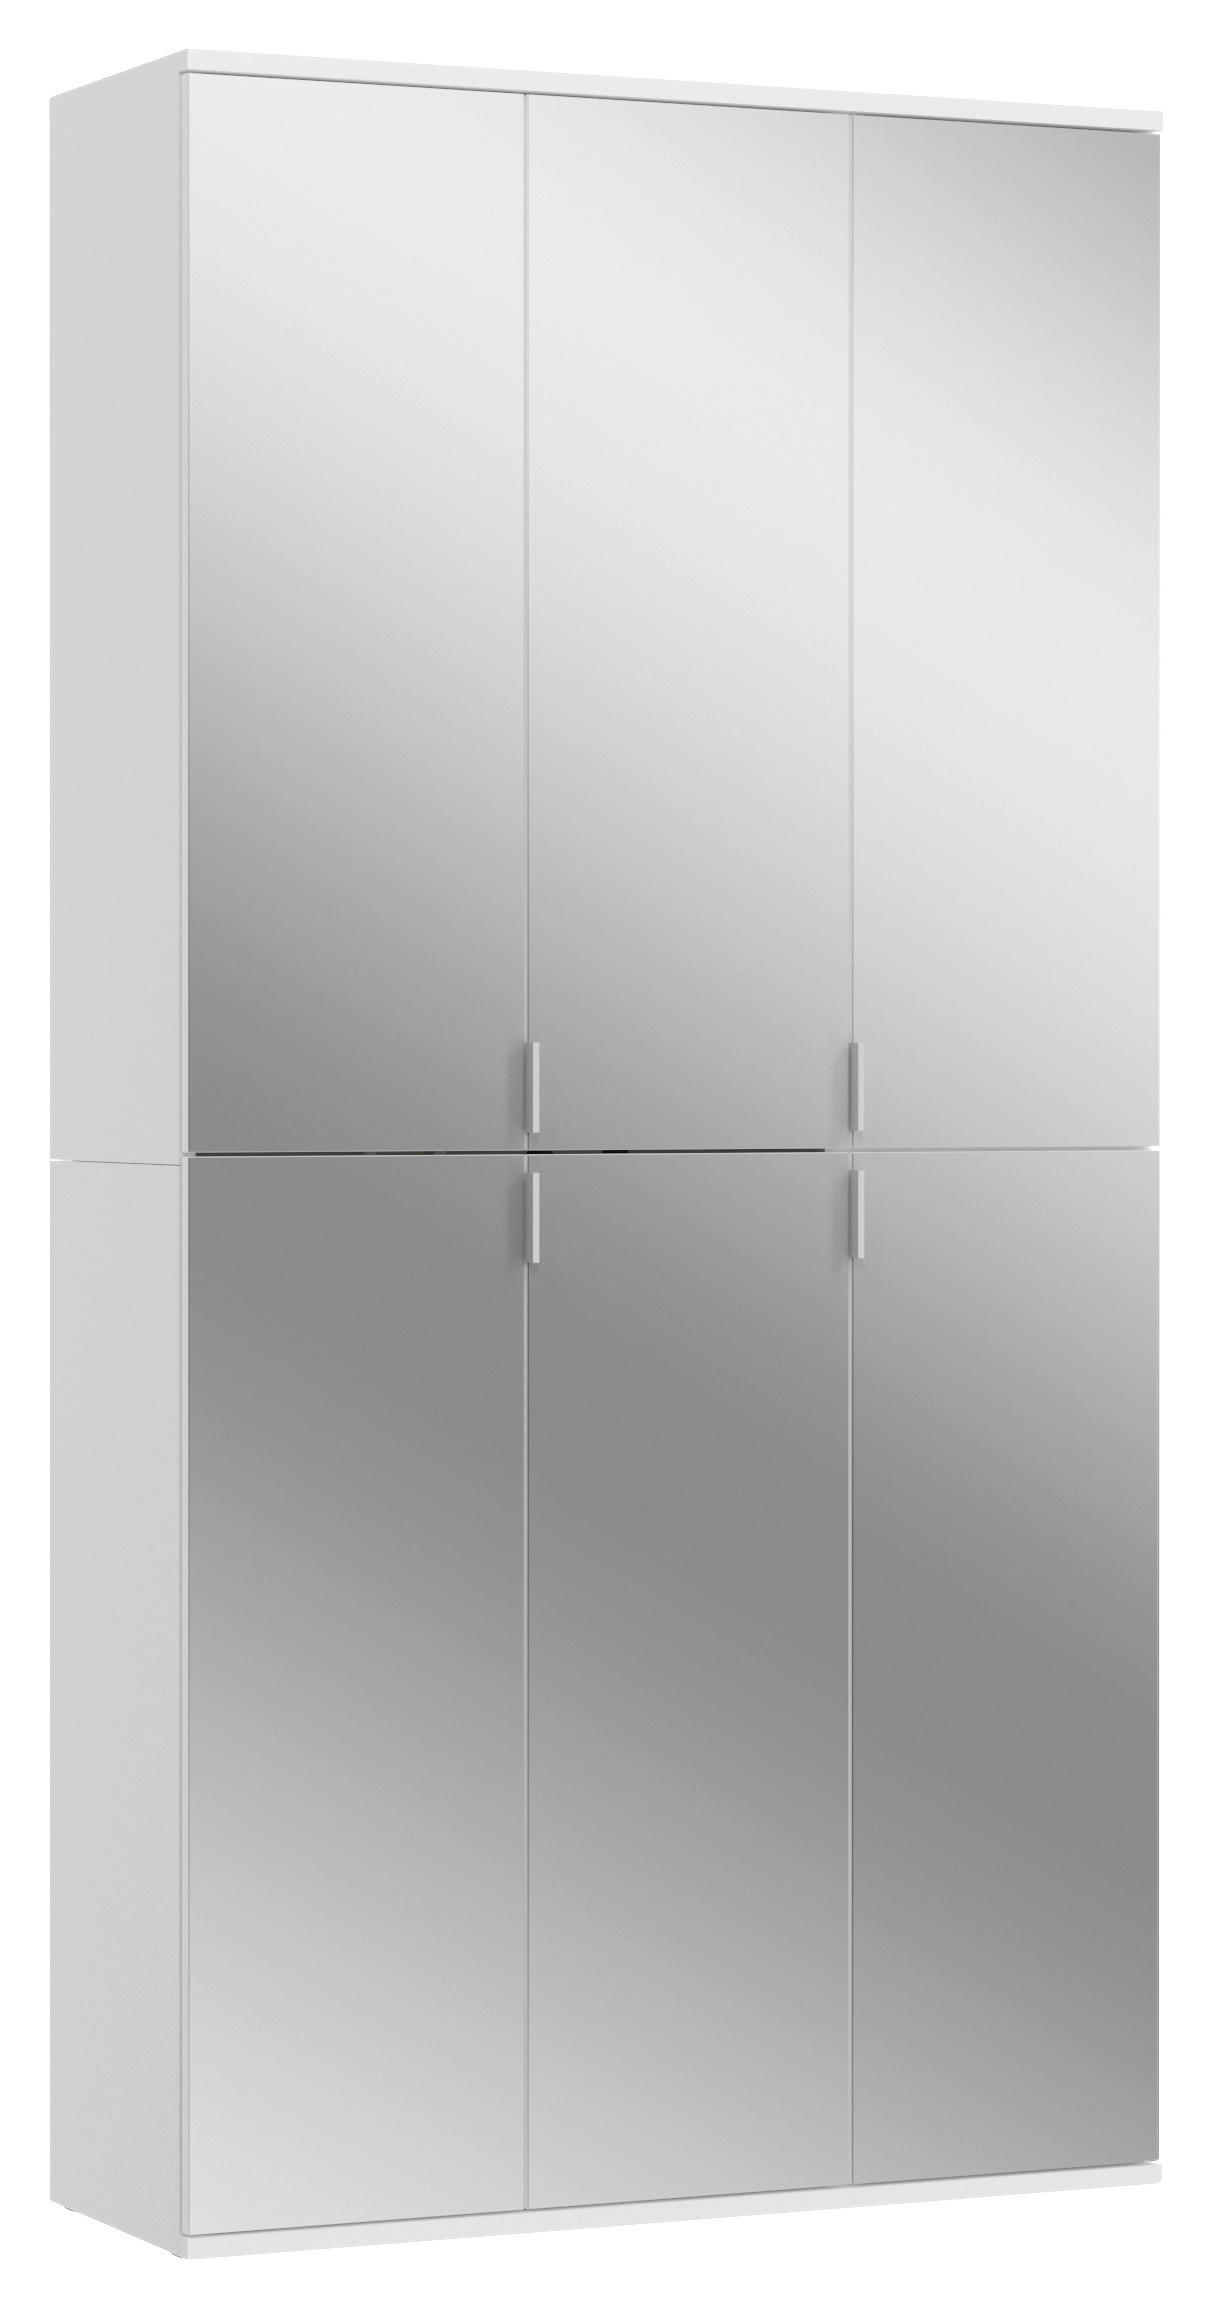 DREHTÜRENSCHRANK  in Weiß  - Chromfarben/Weiß, MODERN, Glas/Holzwerkstoff (91/193/34cm) - MID.YOU